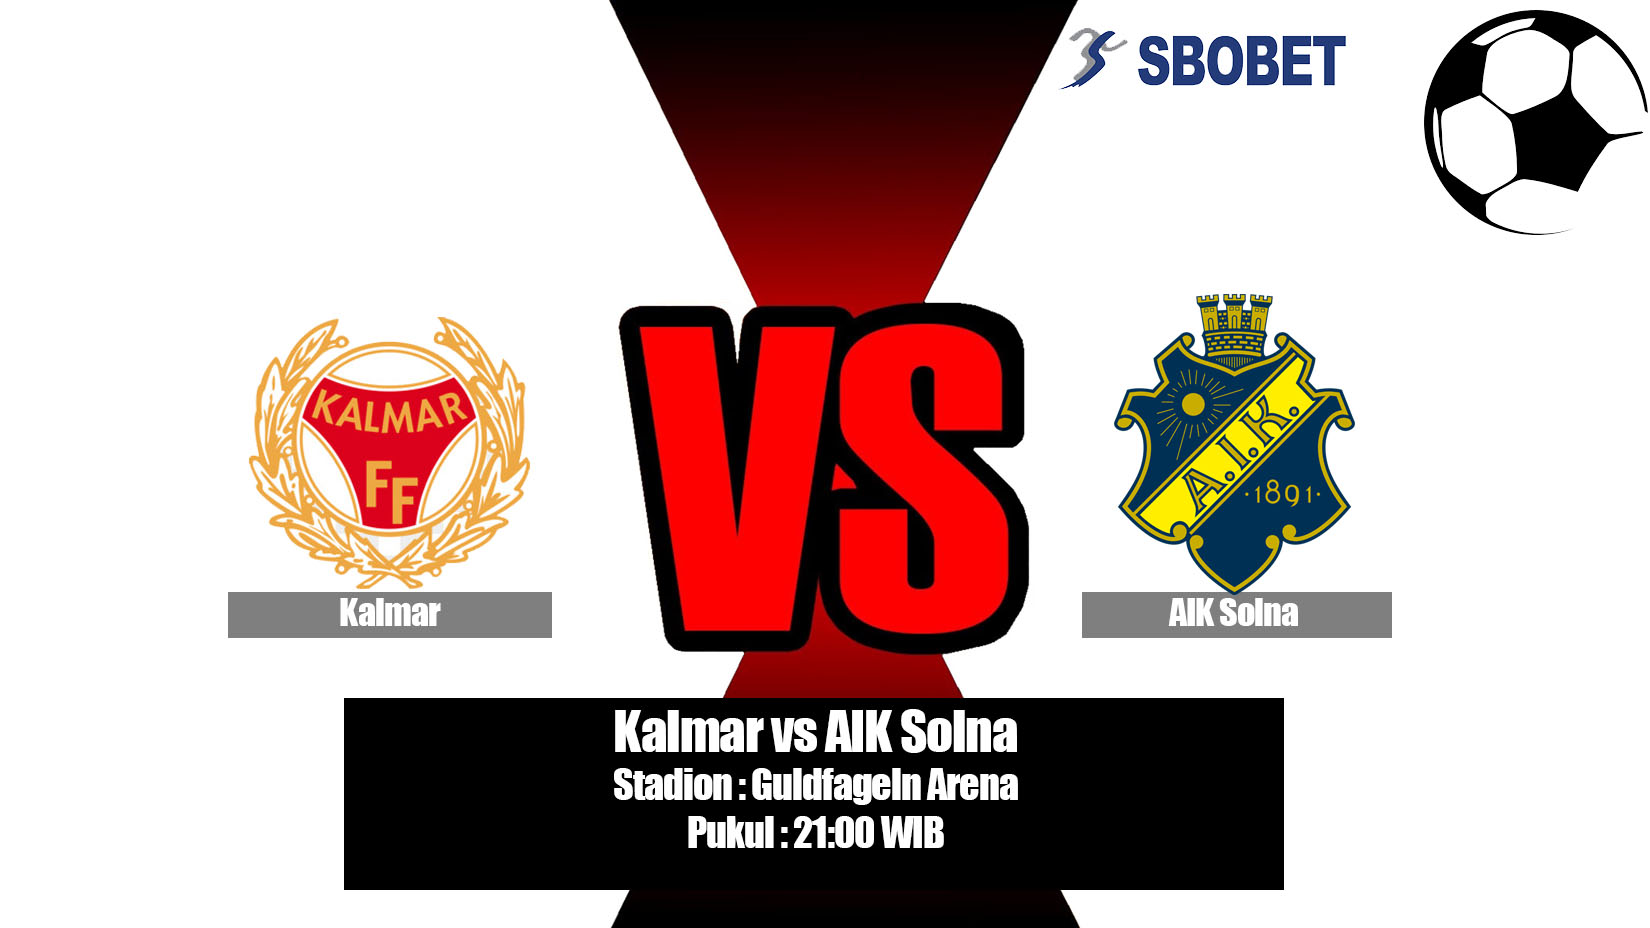 Prediksi Bola Kalmar vs AIK Solna 6 Juli 2019